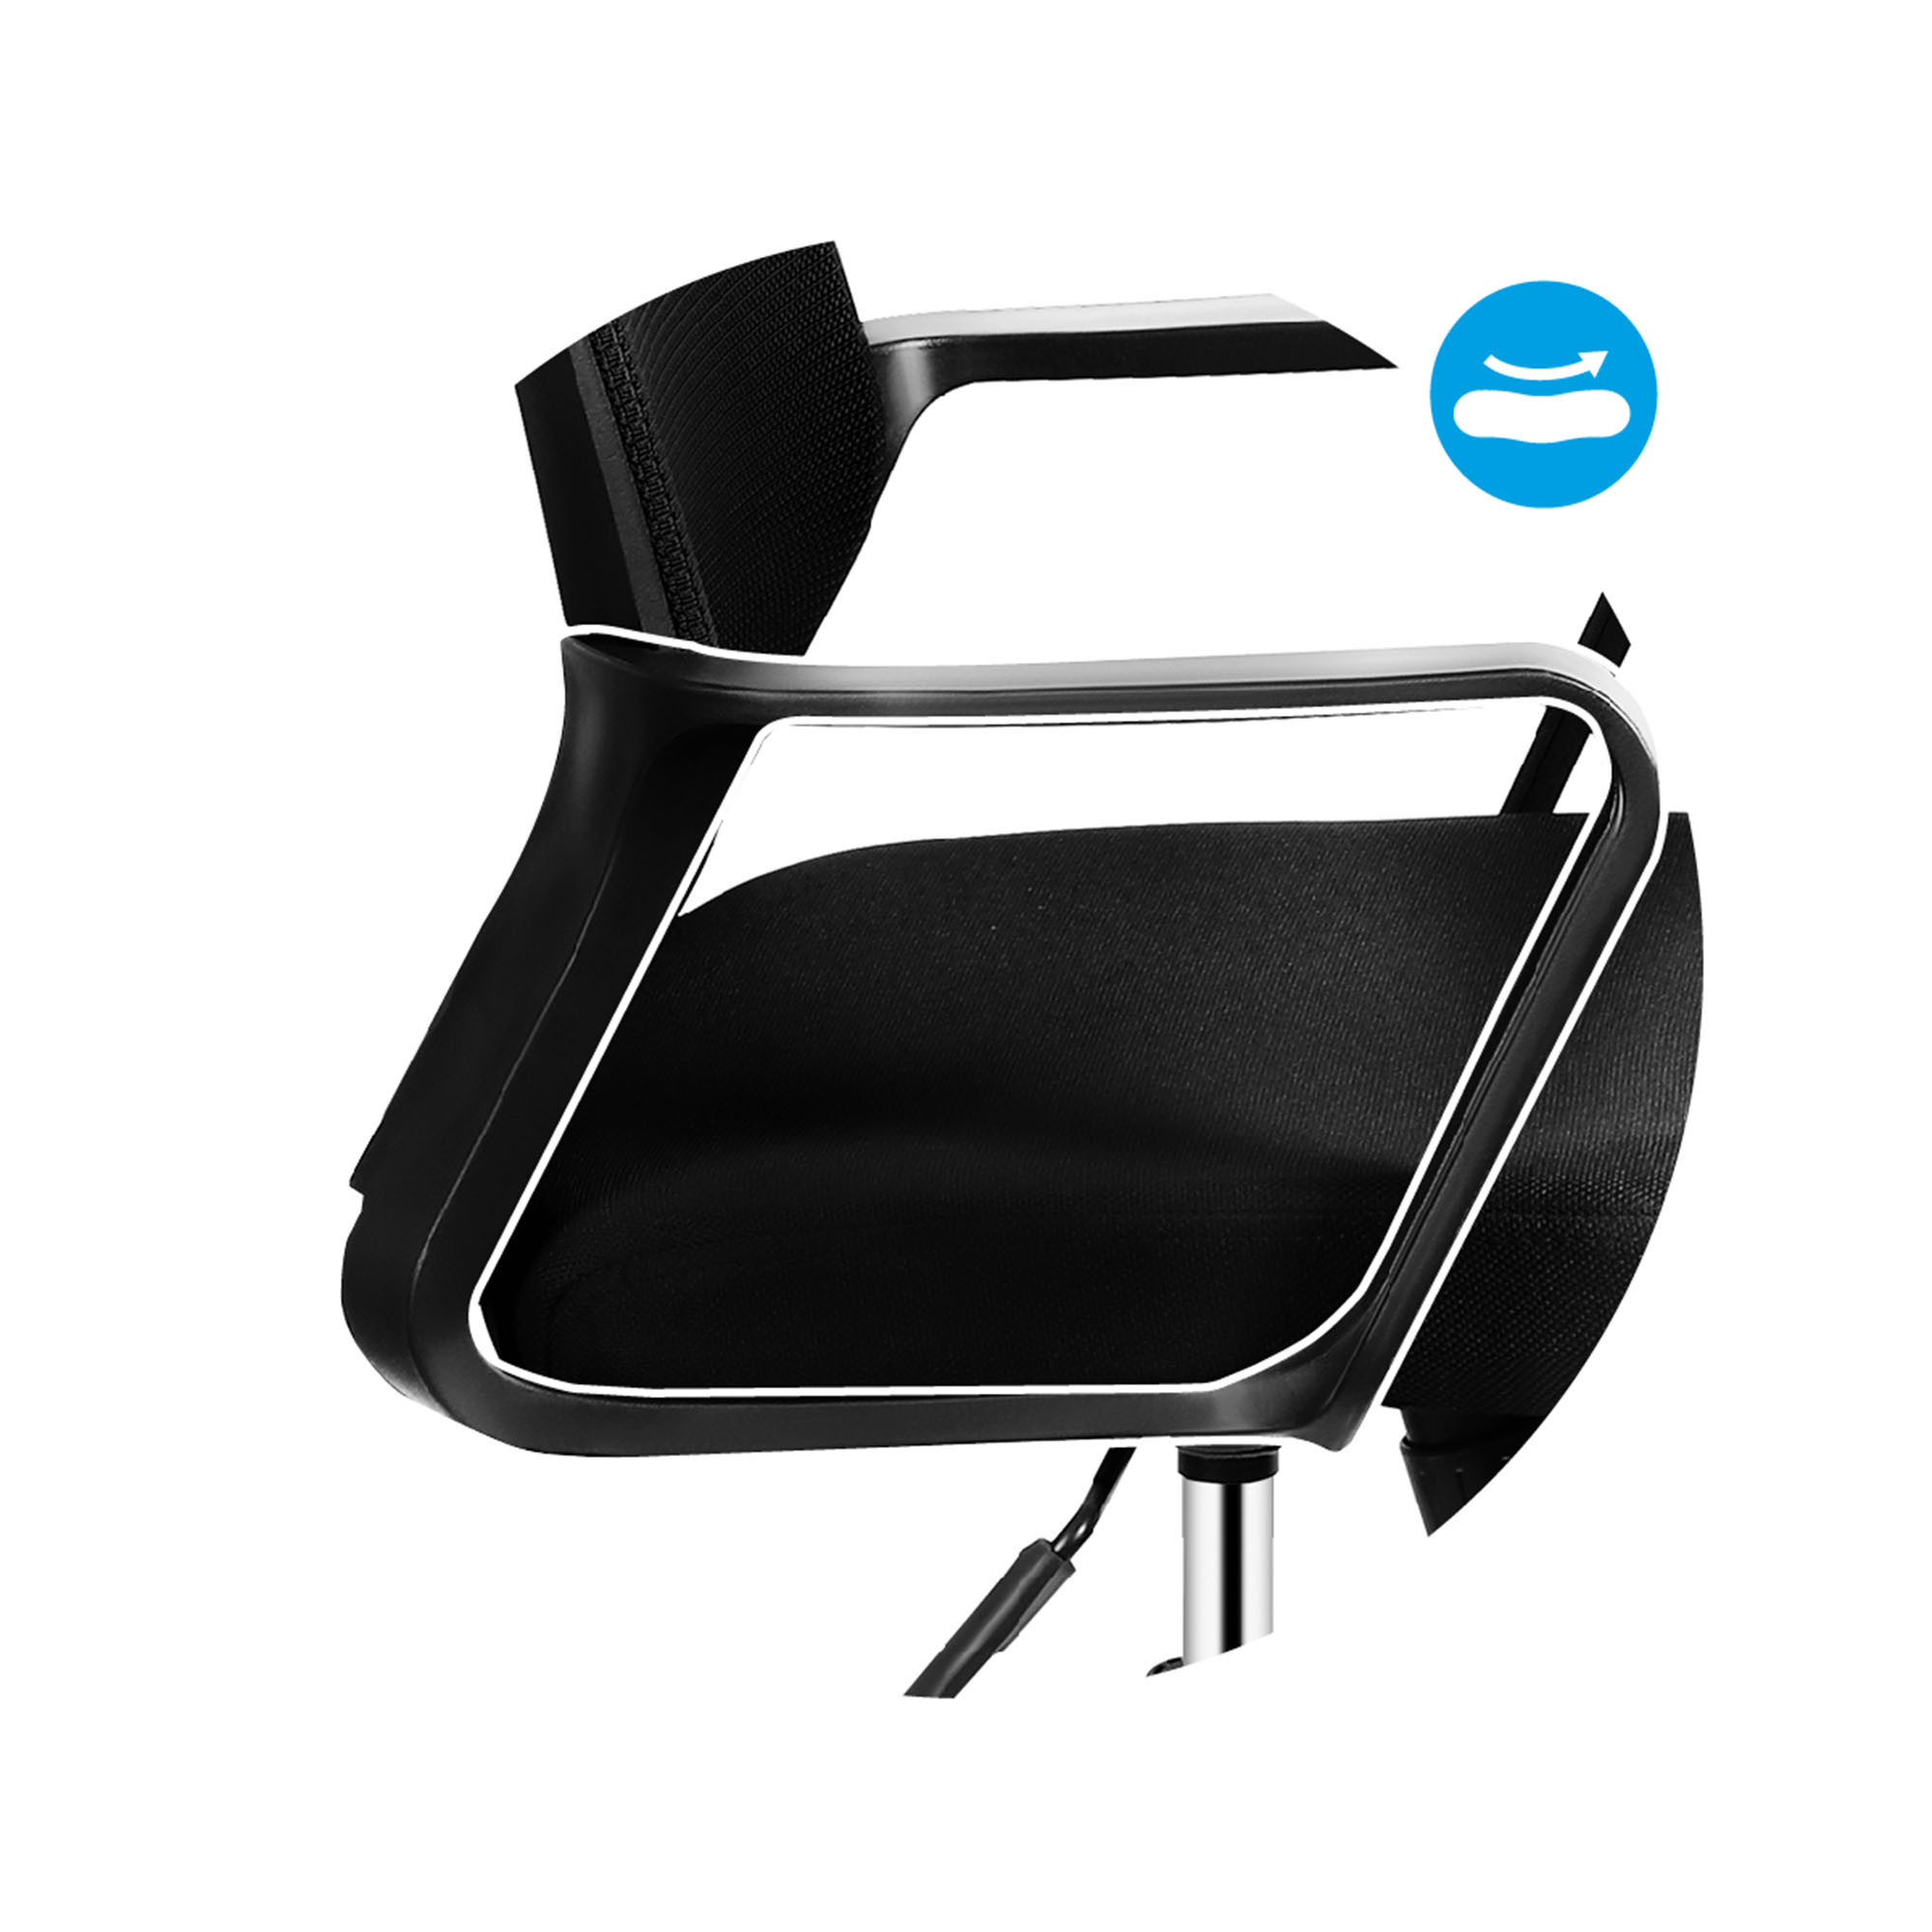 Kancelářská židle Mark Adler - Manager 2.1 černá